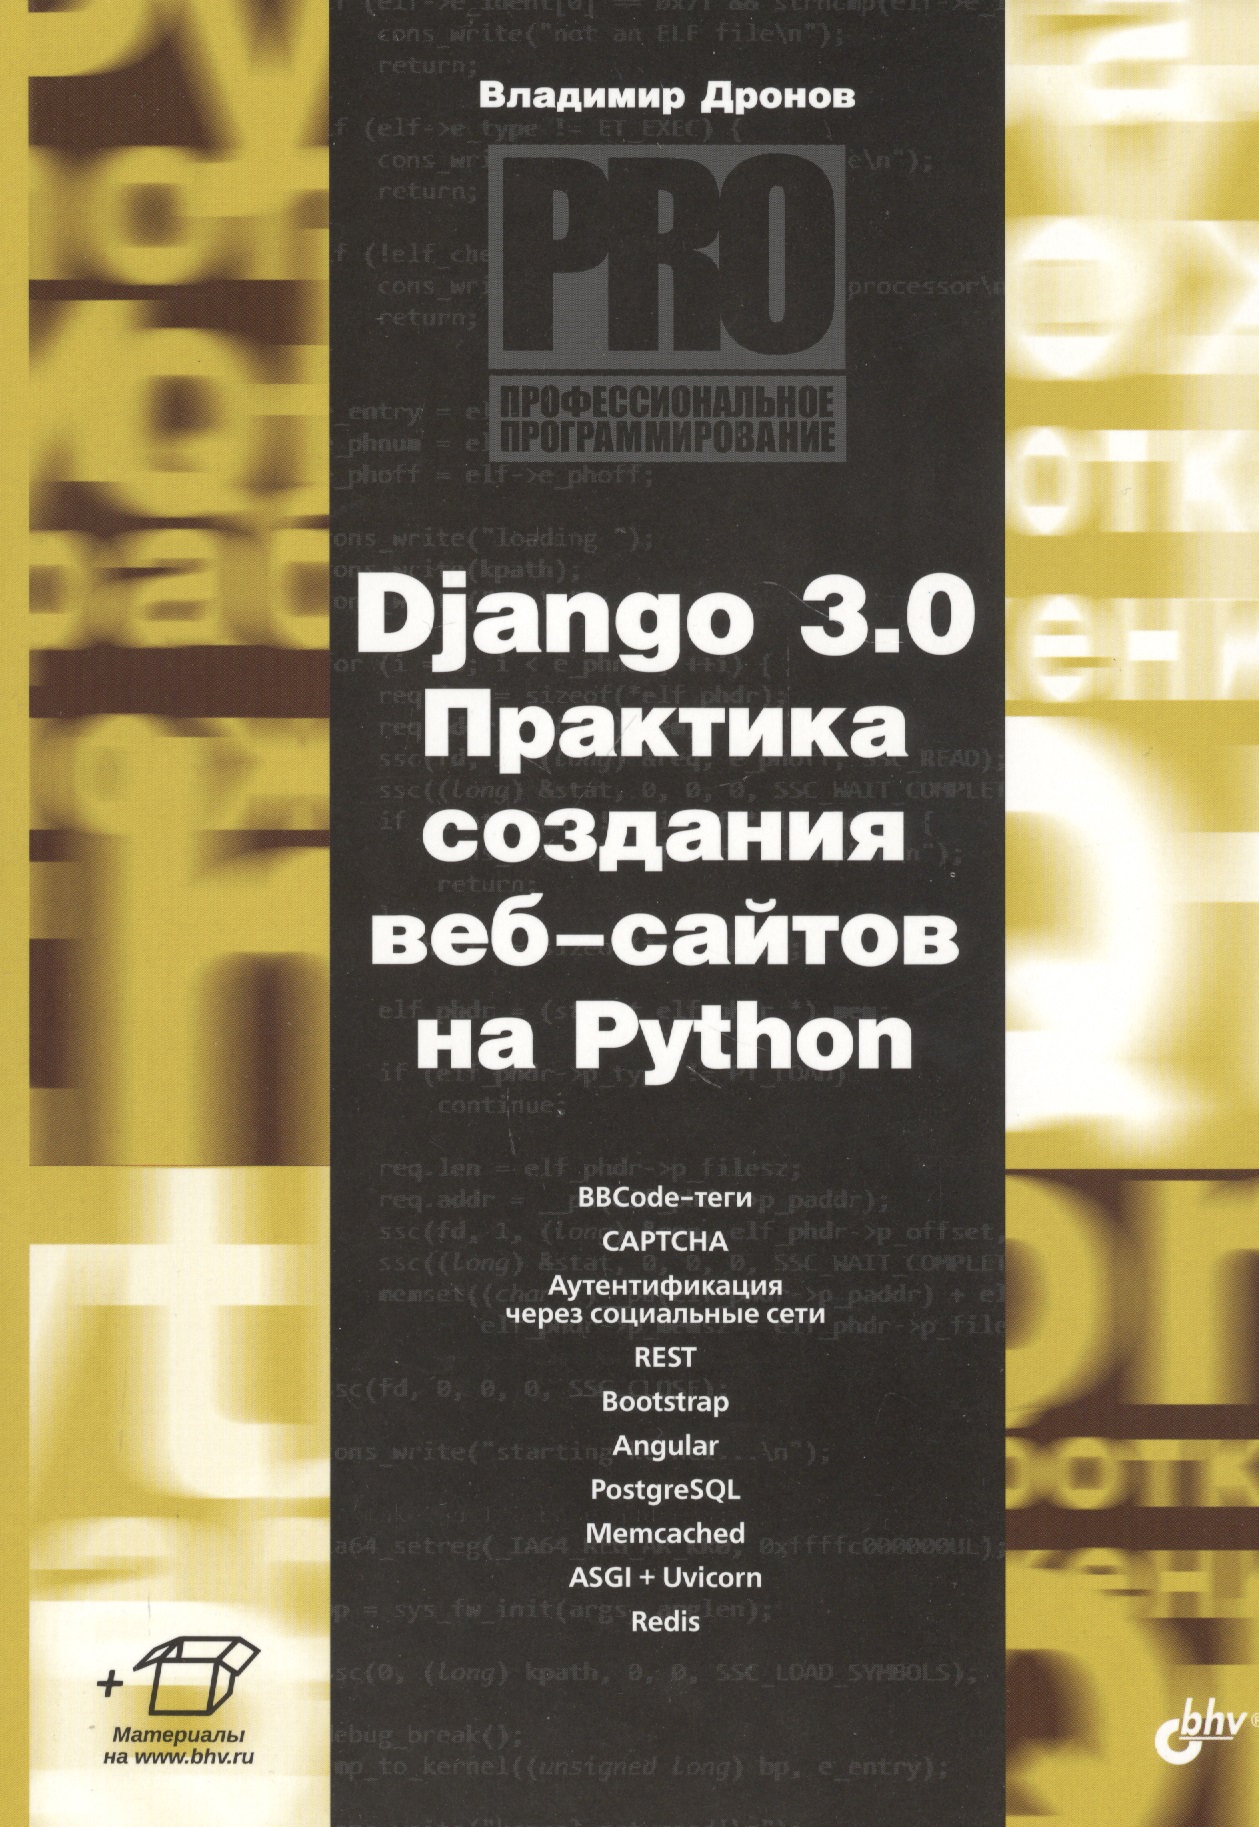 Дронов Владимир Александрович Django 3.0. Практика создания веб-сайтов на Python дронов в django 3 0 практика создания веб сайтов на python